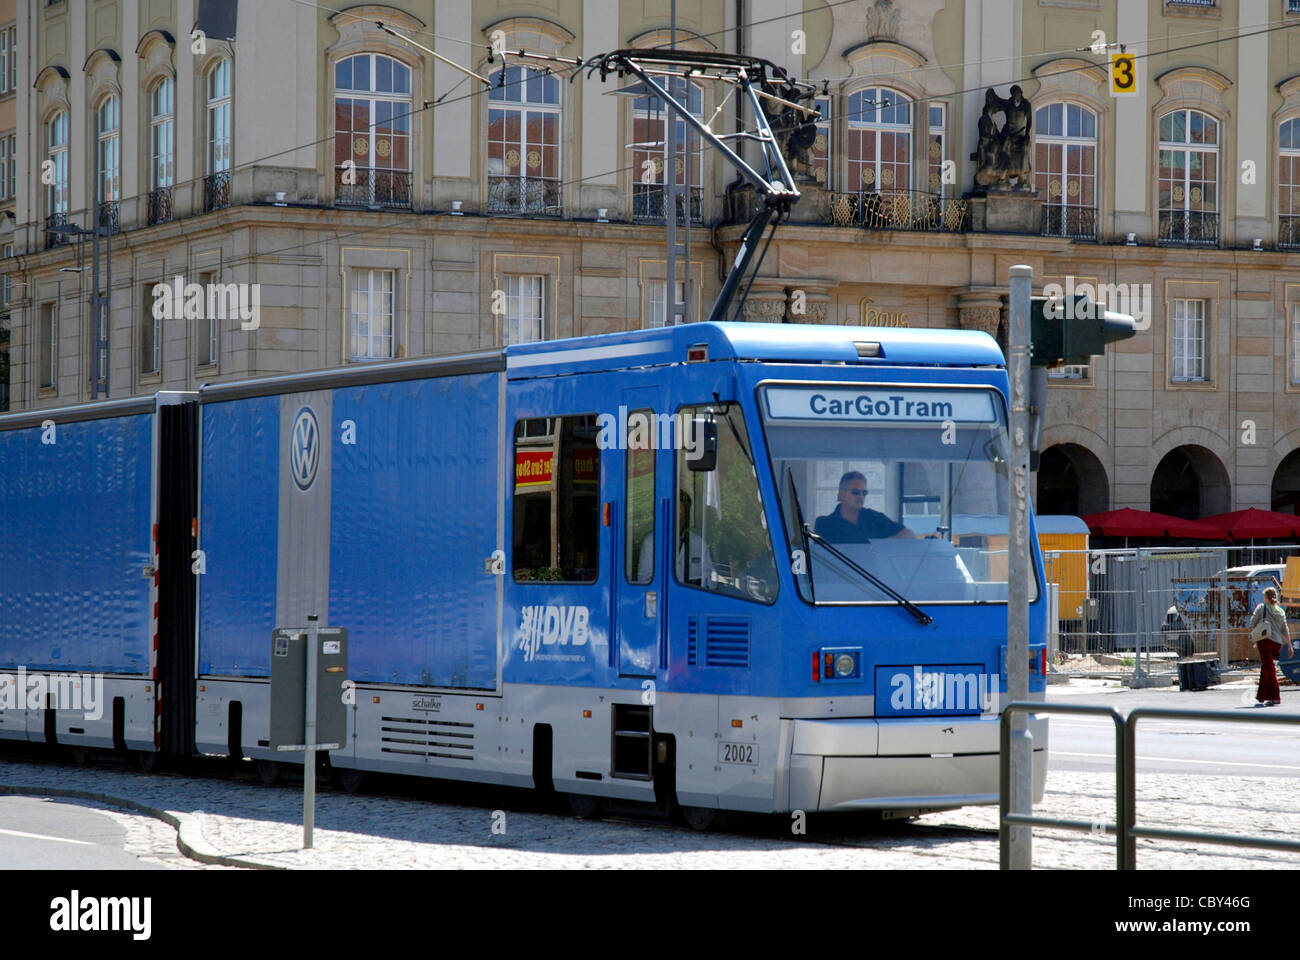 CargoTram in Dresden. Stock Photo